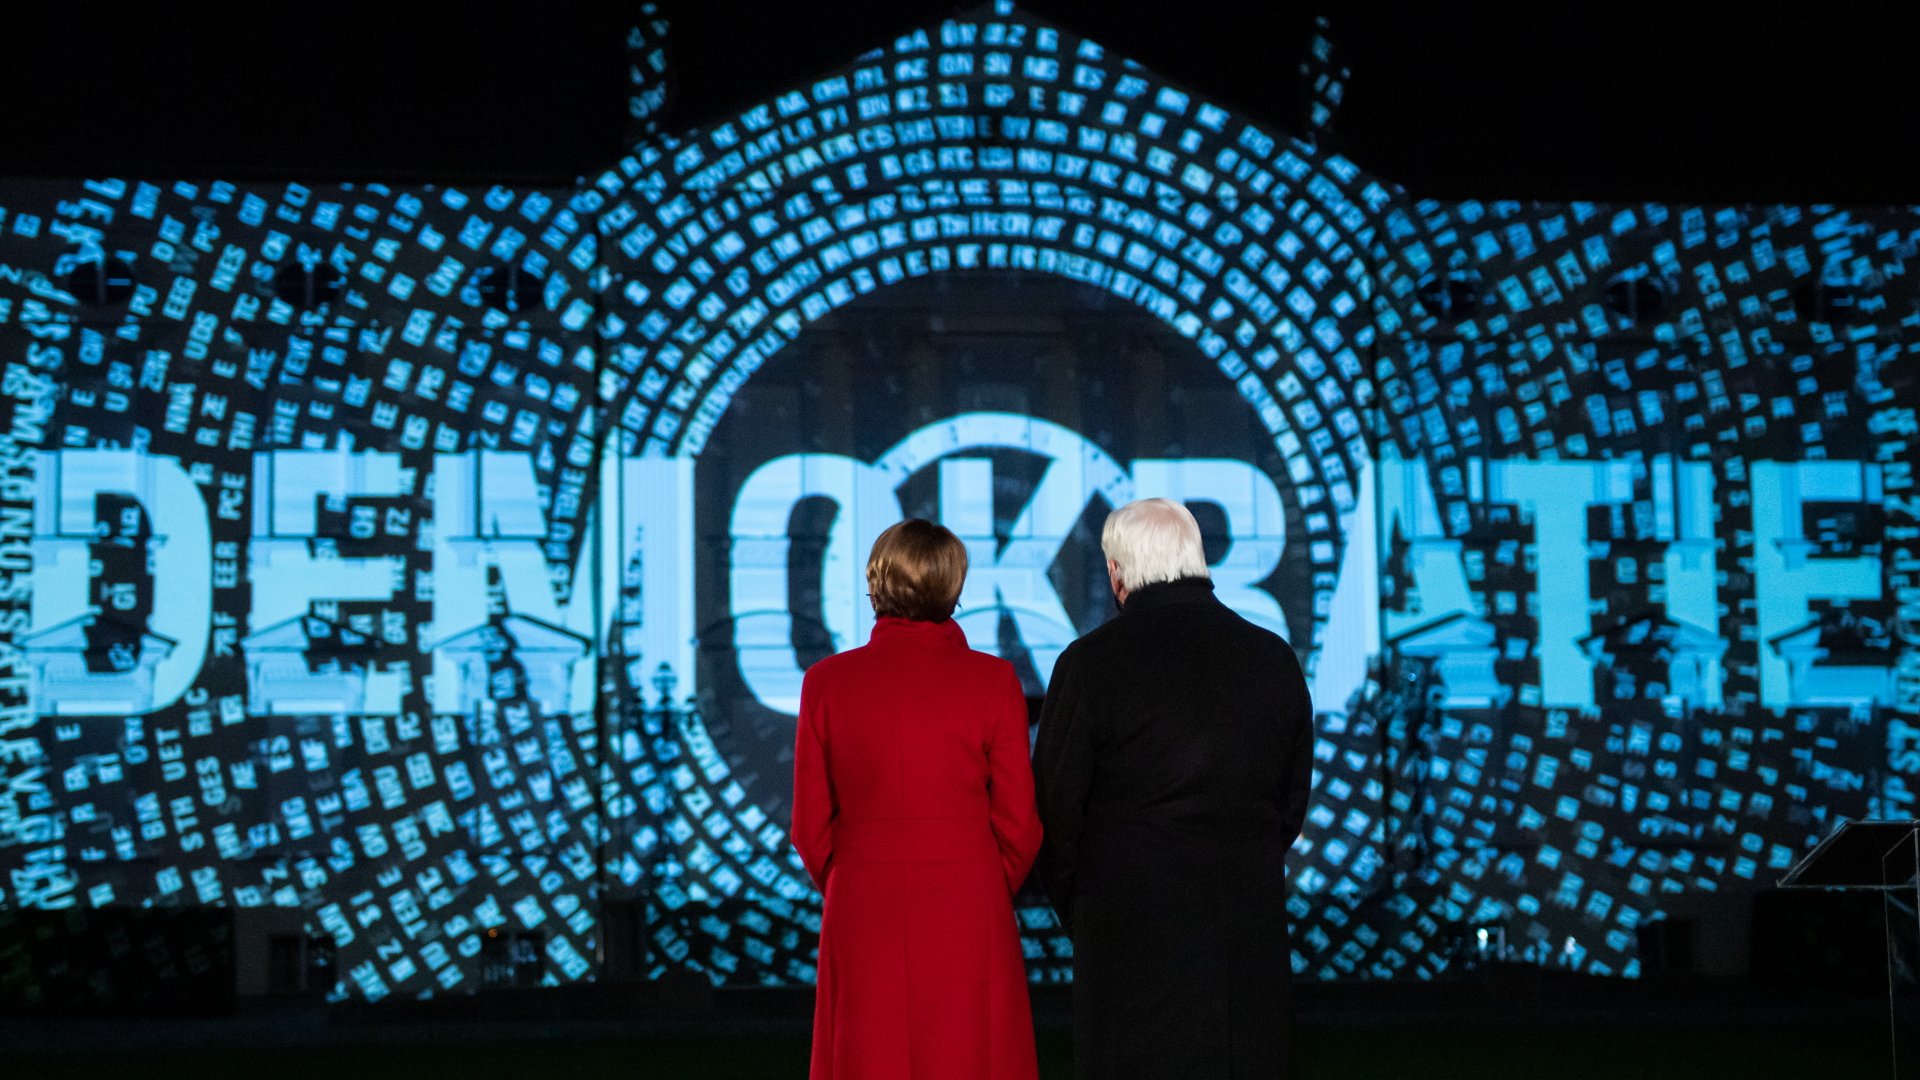 Bundespräsident Steinmeier und seine Frau blicken auf eine Lichtinstallation am Schloss Bellevue.